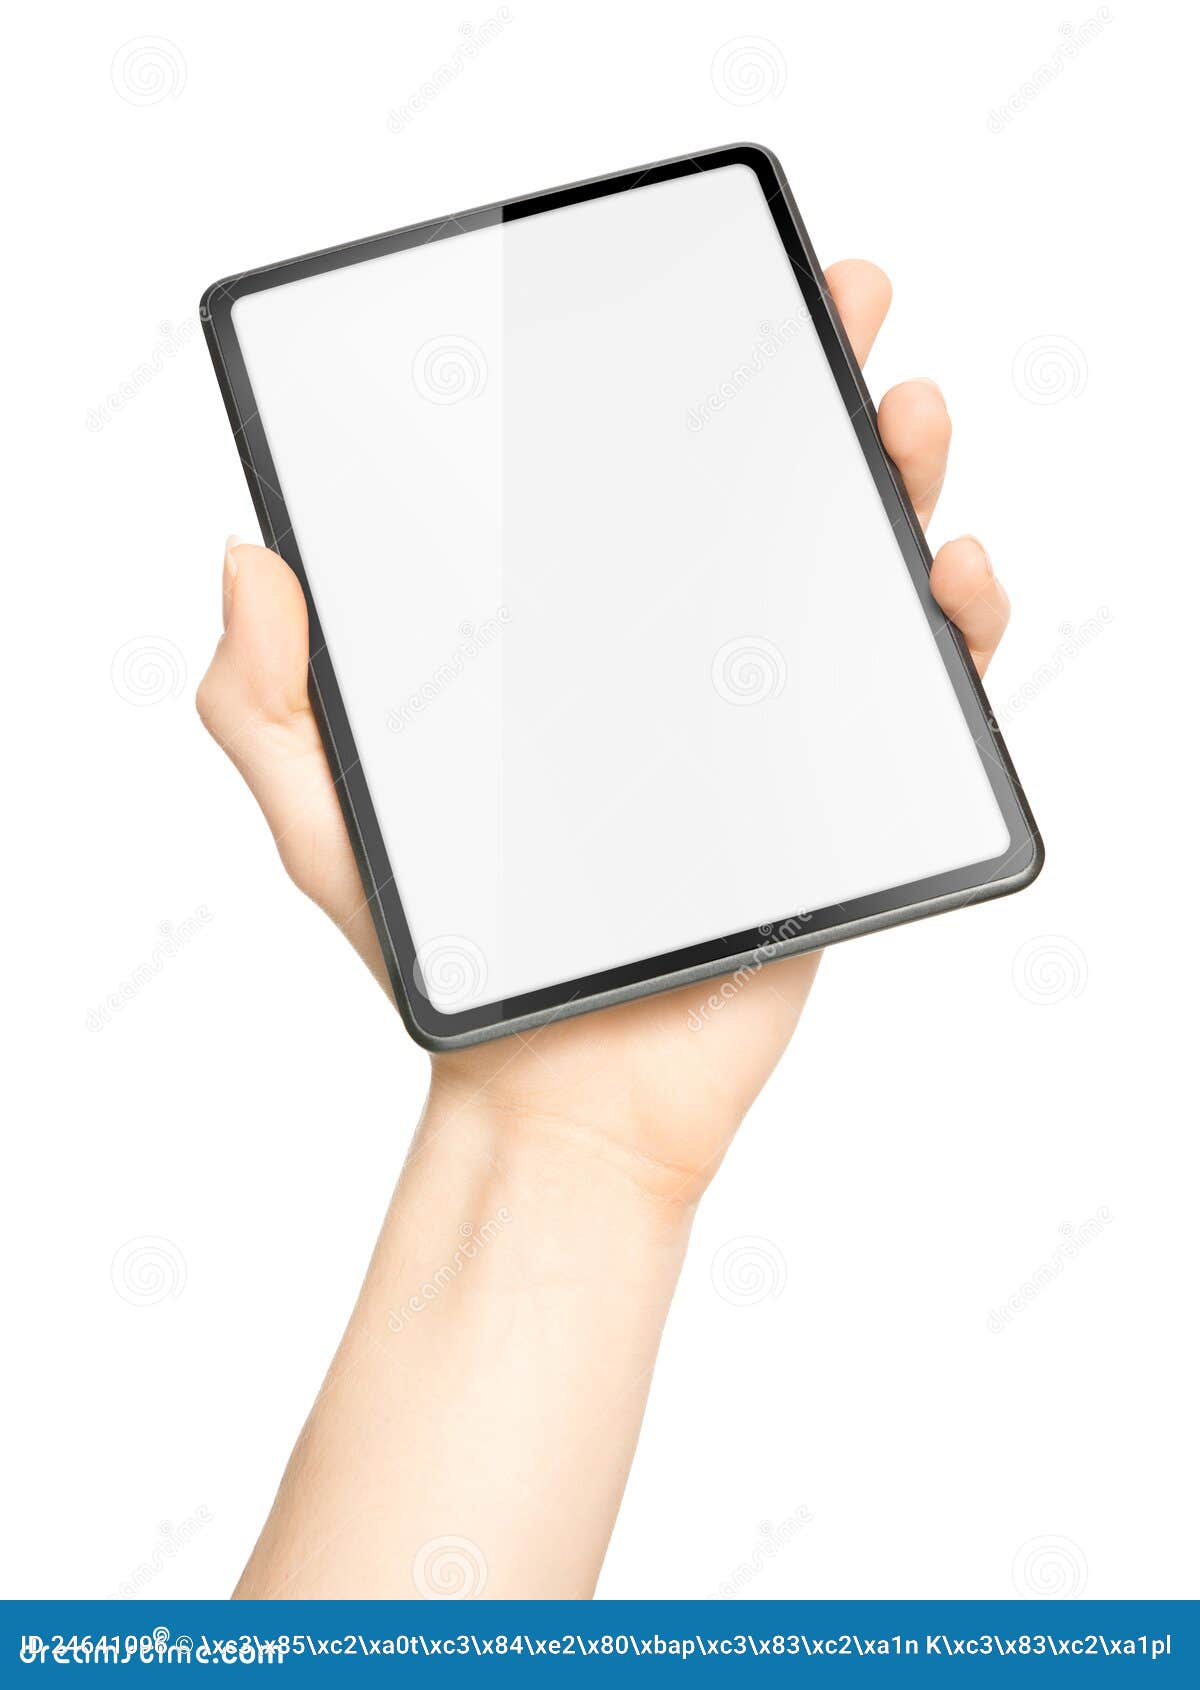 Tablette Simple Avec L'espace De Copie Photo stock - Image du